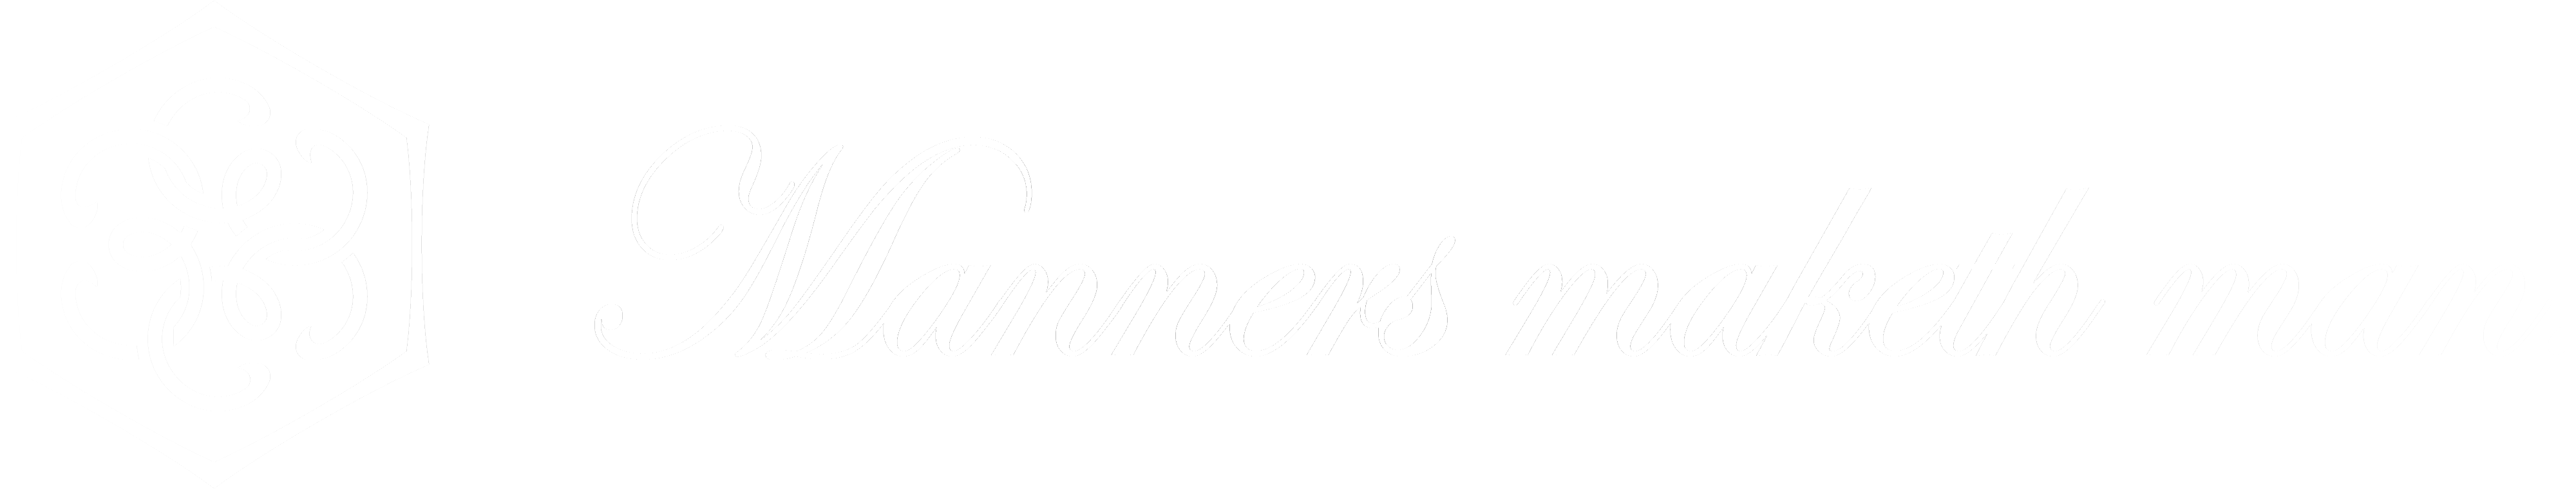 Manners maketh man. (マナーズ・メイクス・マン) - メンズブランド WEBショップ